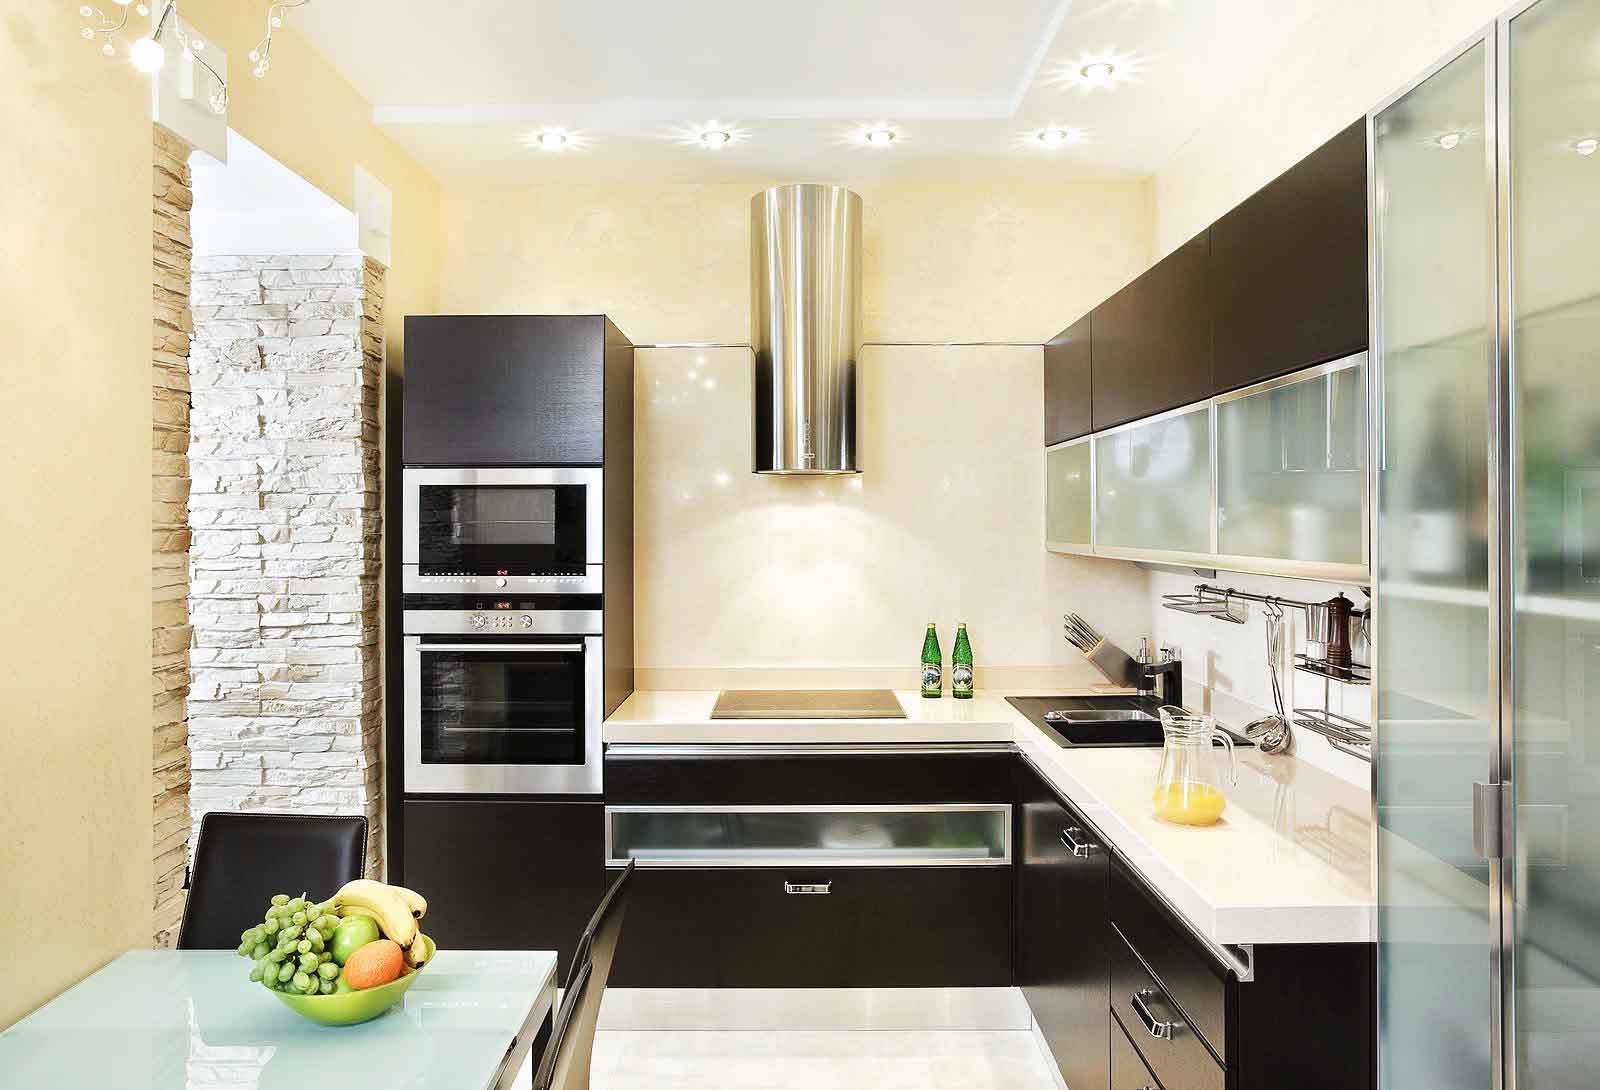 Кухня в стиле модерн: дизайн, фото интерьера угловой кухни, новинки от дизайнеров 2019